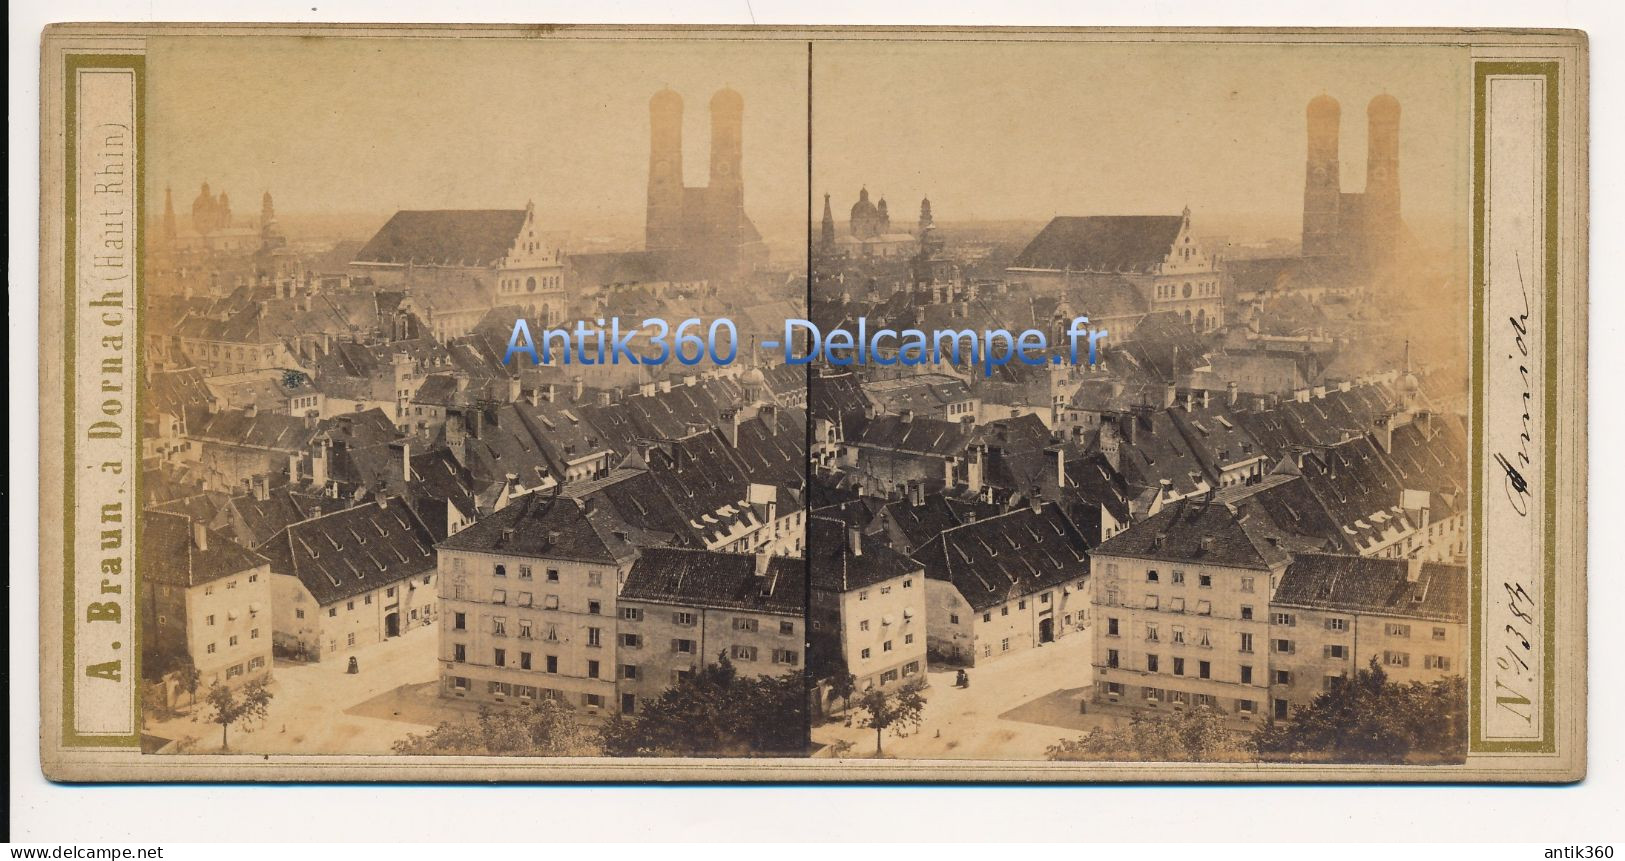 Photographie Ancienne Vue Stéréoscopique Circa 1860 Allemagne Vue De Munich Photographe Adolphe BRAUN - Photos Stéréoscopiques